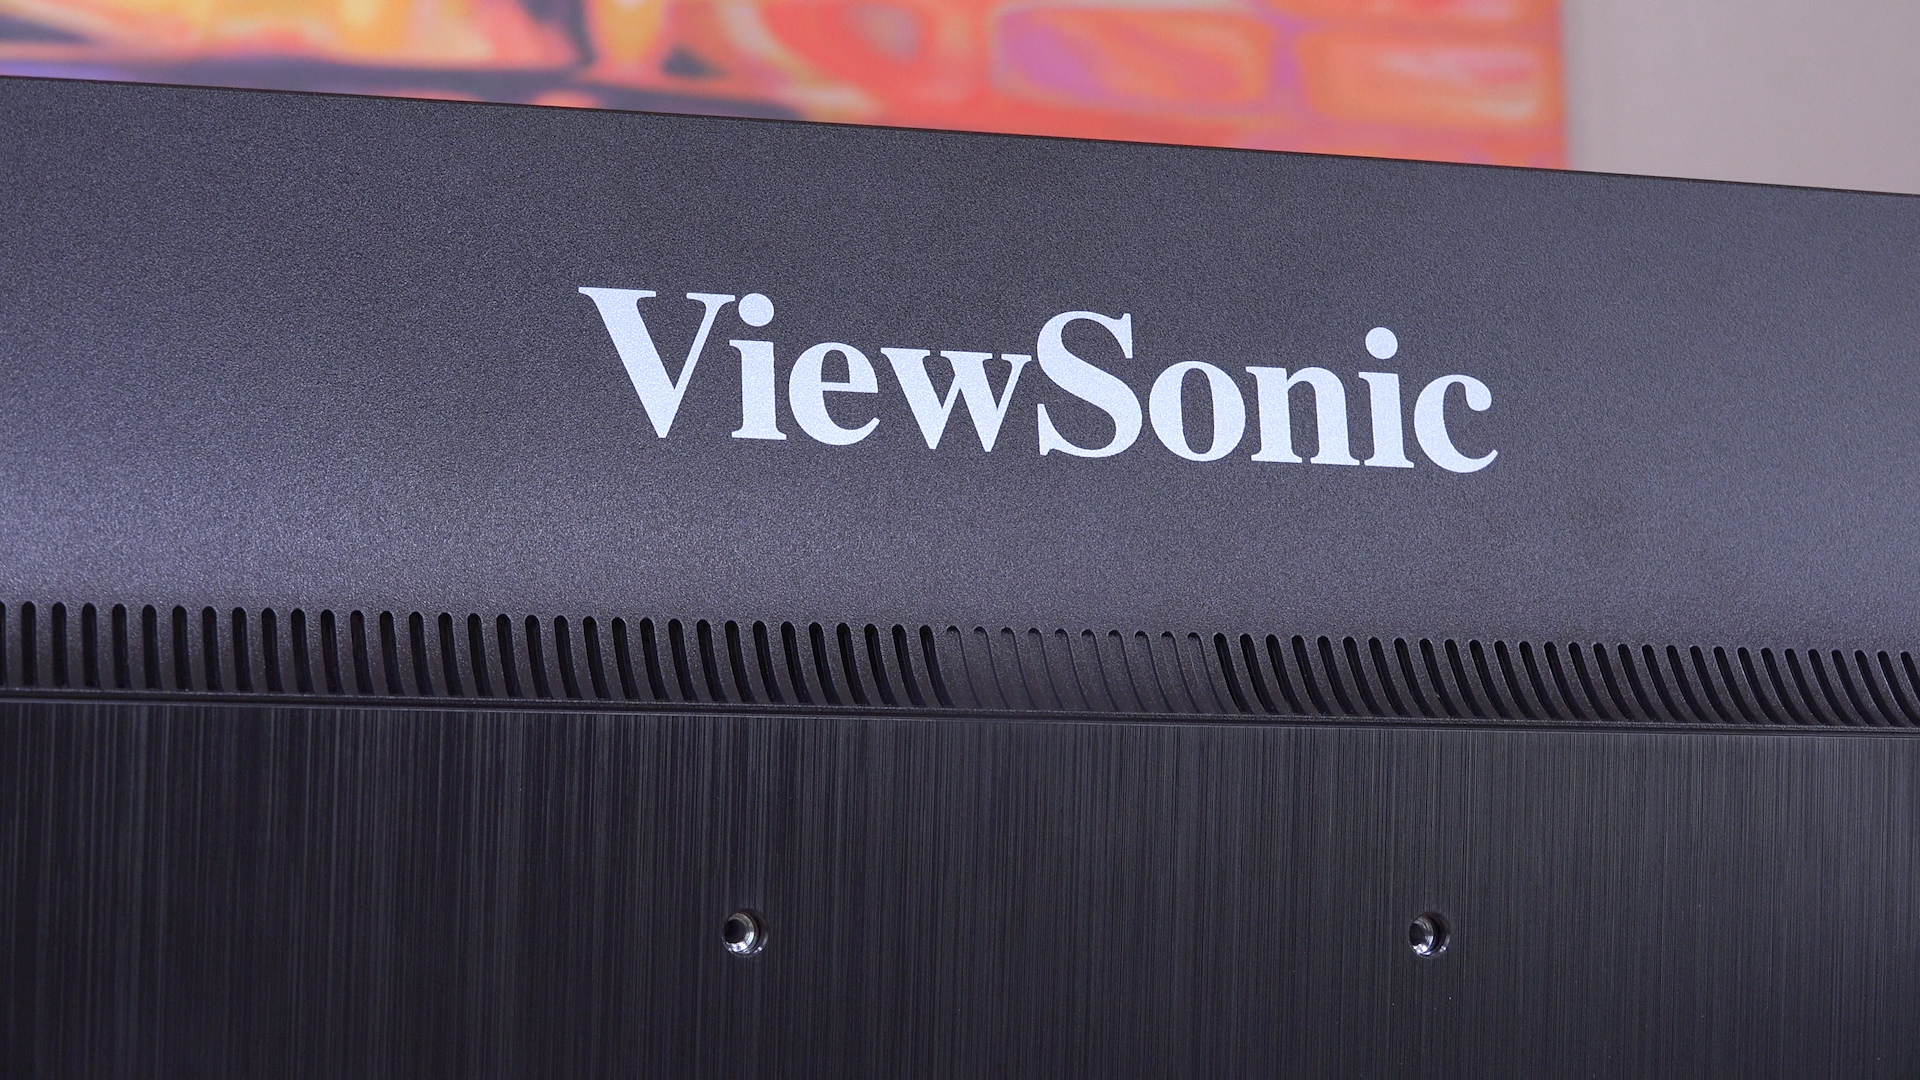 ViewSonic VX2475S 4K monitör incelemesi '4K Fiyat/Performans monitörü'